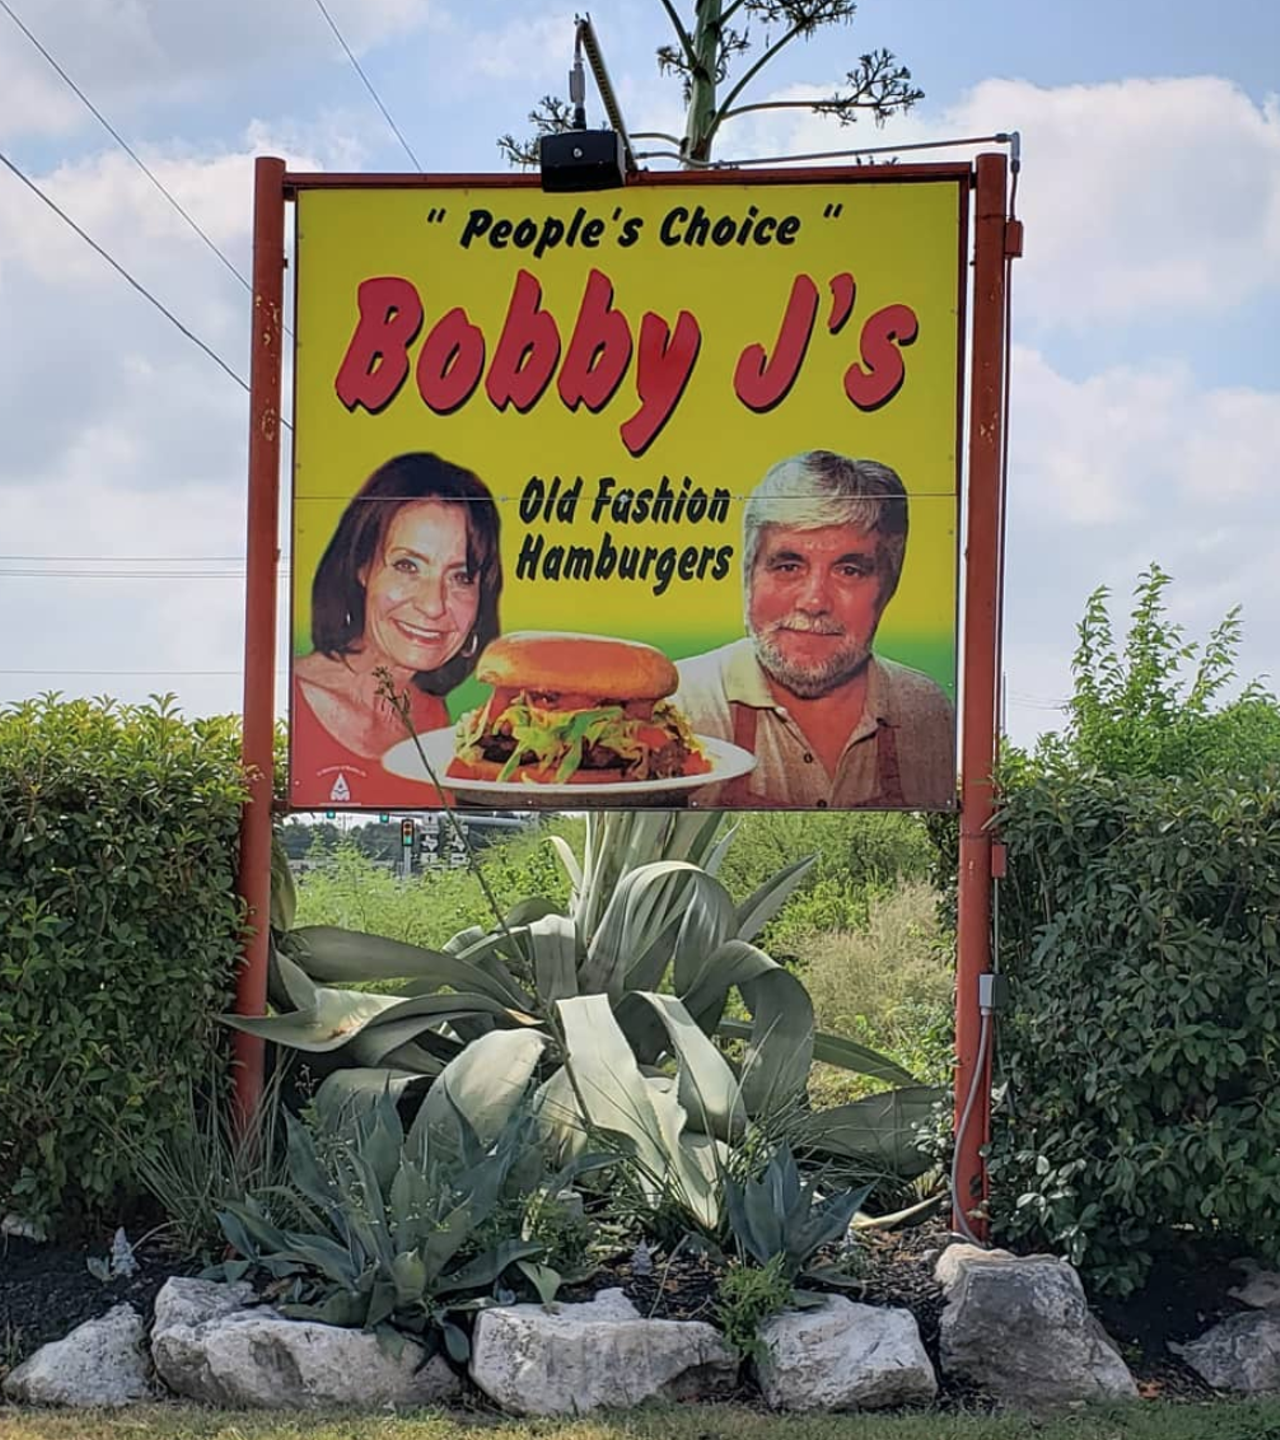 Bobby J's Old Fashioned Hamburgers
13247 Bandera Road, Helotes, (210) 695-4941, bobbyjsburgers.com
Photo via Instagram / stevenguerrero1794